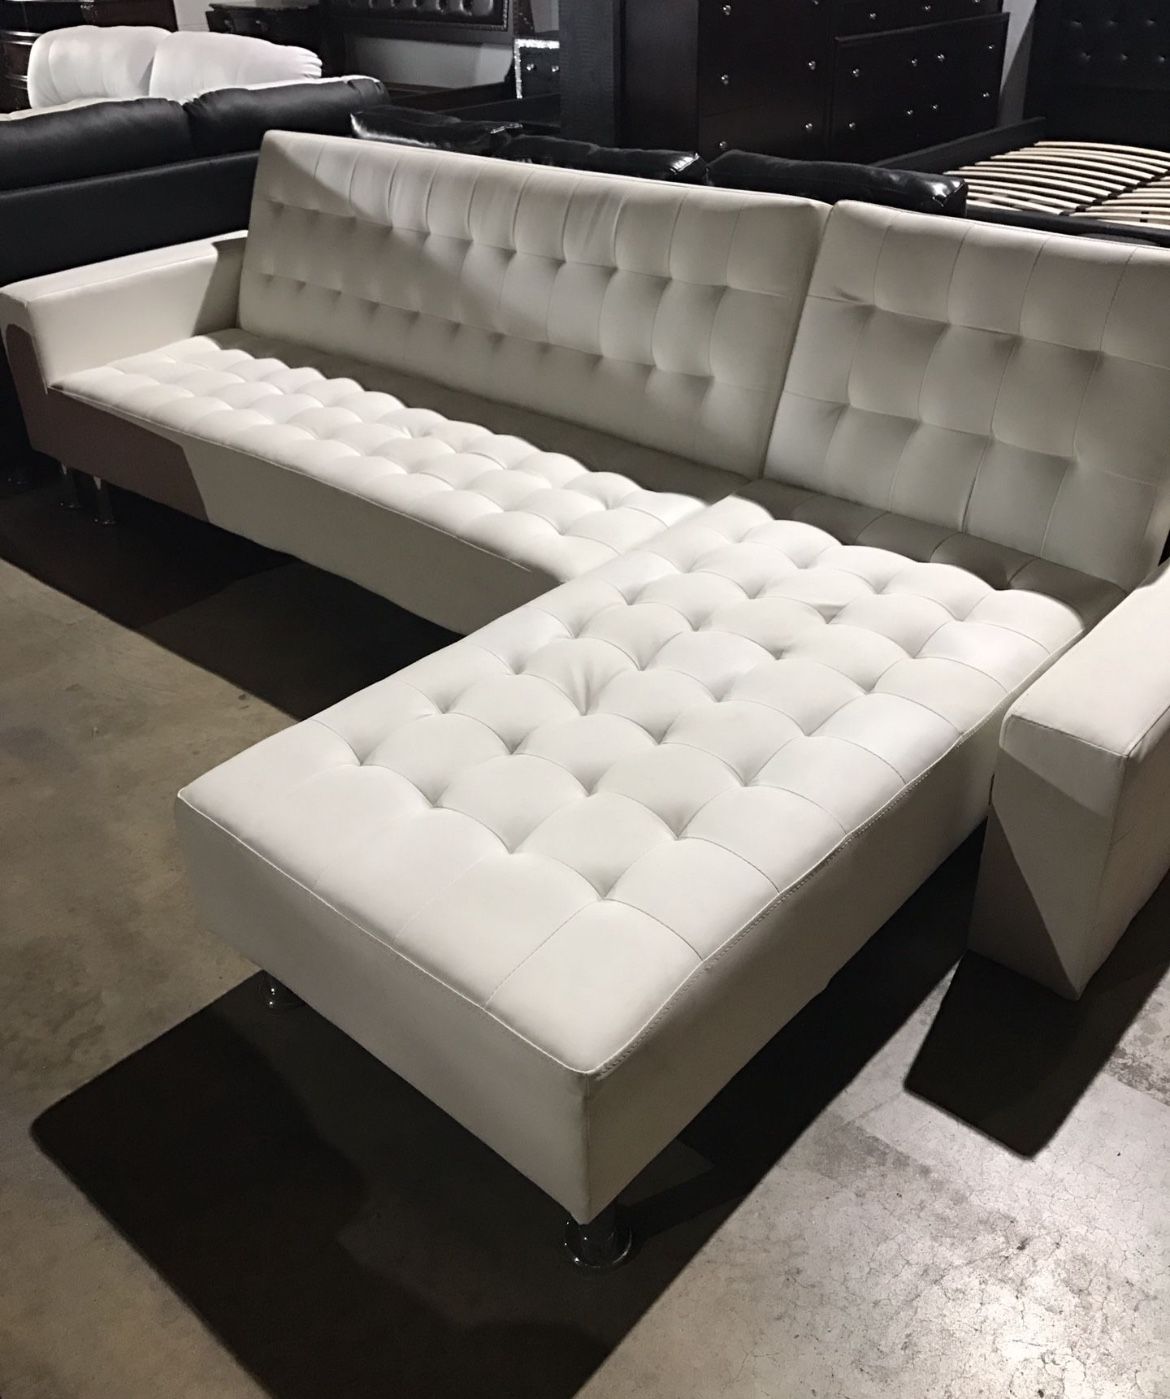 New White Futon Sectional Sofa